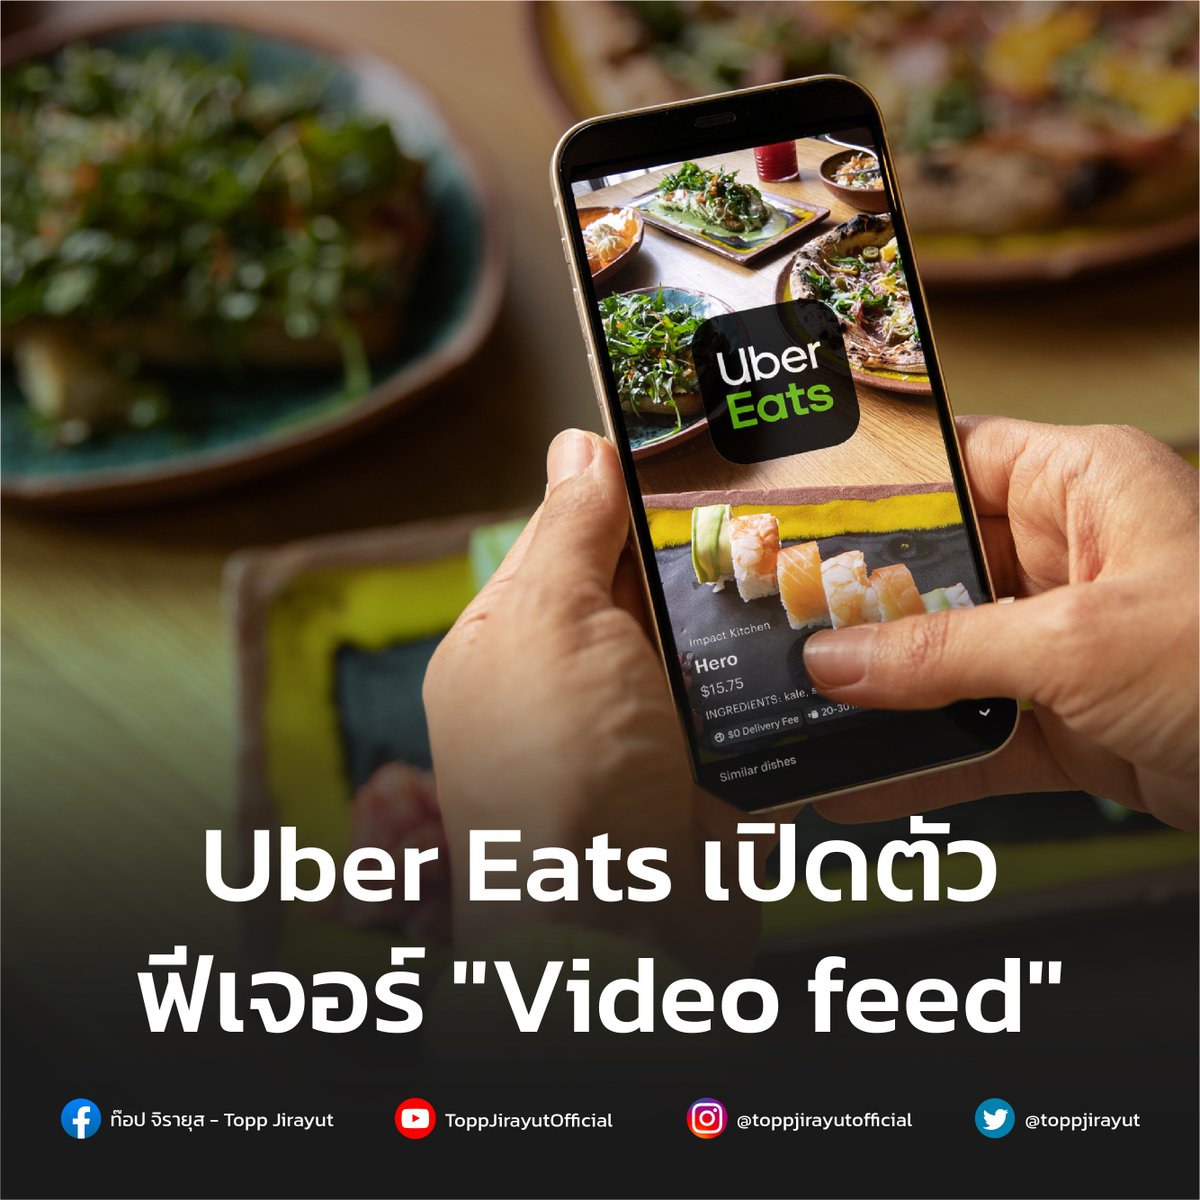 Uber Eats จะเปิดตัวฟีเจอร์ฟีดวิดีโอแบบสั้นเพื่อเพิ่มการค้นพบและช่วยให้ร้านอาหารแสดงอาหารของตัวเองได้ โดยผู้ใช้งานจะถูกจำลองประสบการณ์เสมือนเห็นขั้นตอนการเตรียมวัตถุดิบต่าง ๆ ก่อนที่อาหารจะถูกจัดส่งมาที่บ้าน bit.ly/3vIQ9rp #UberEats #Toppjirayut #ท๊อปจิรายุส